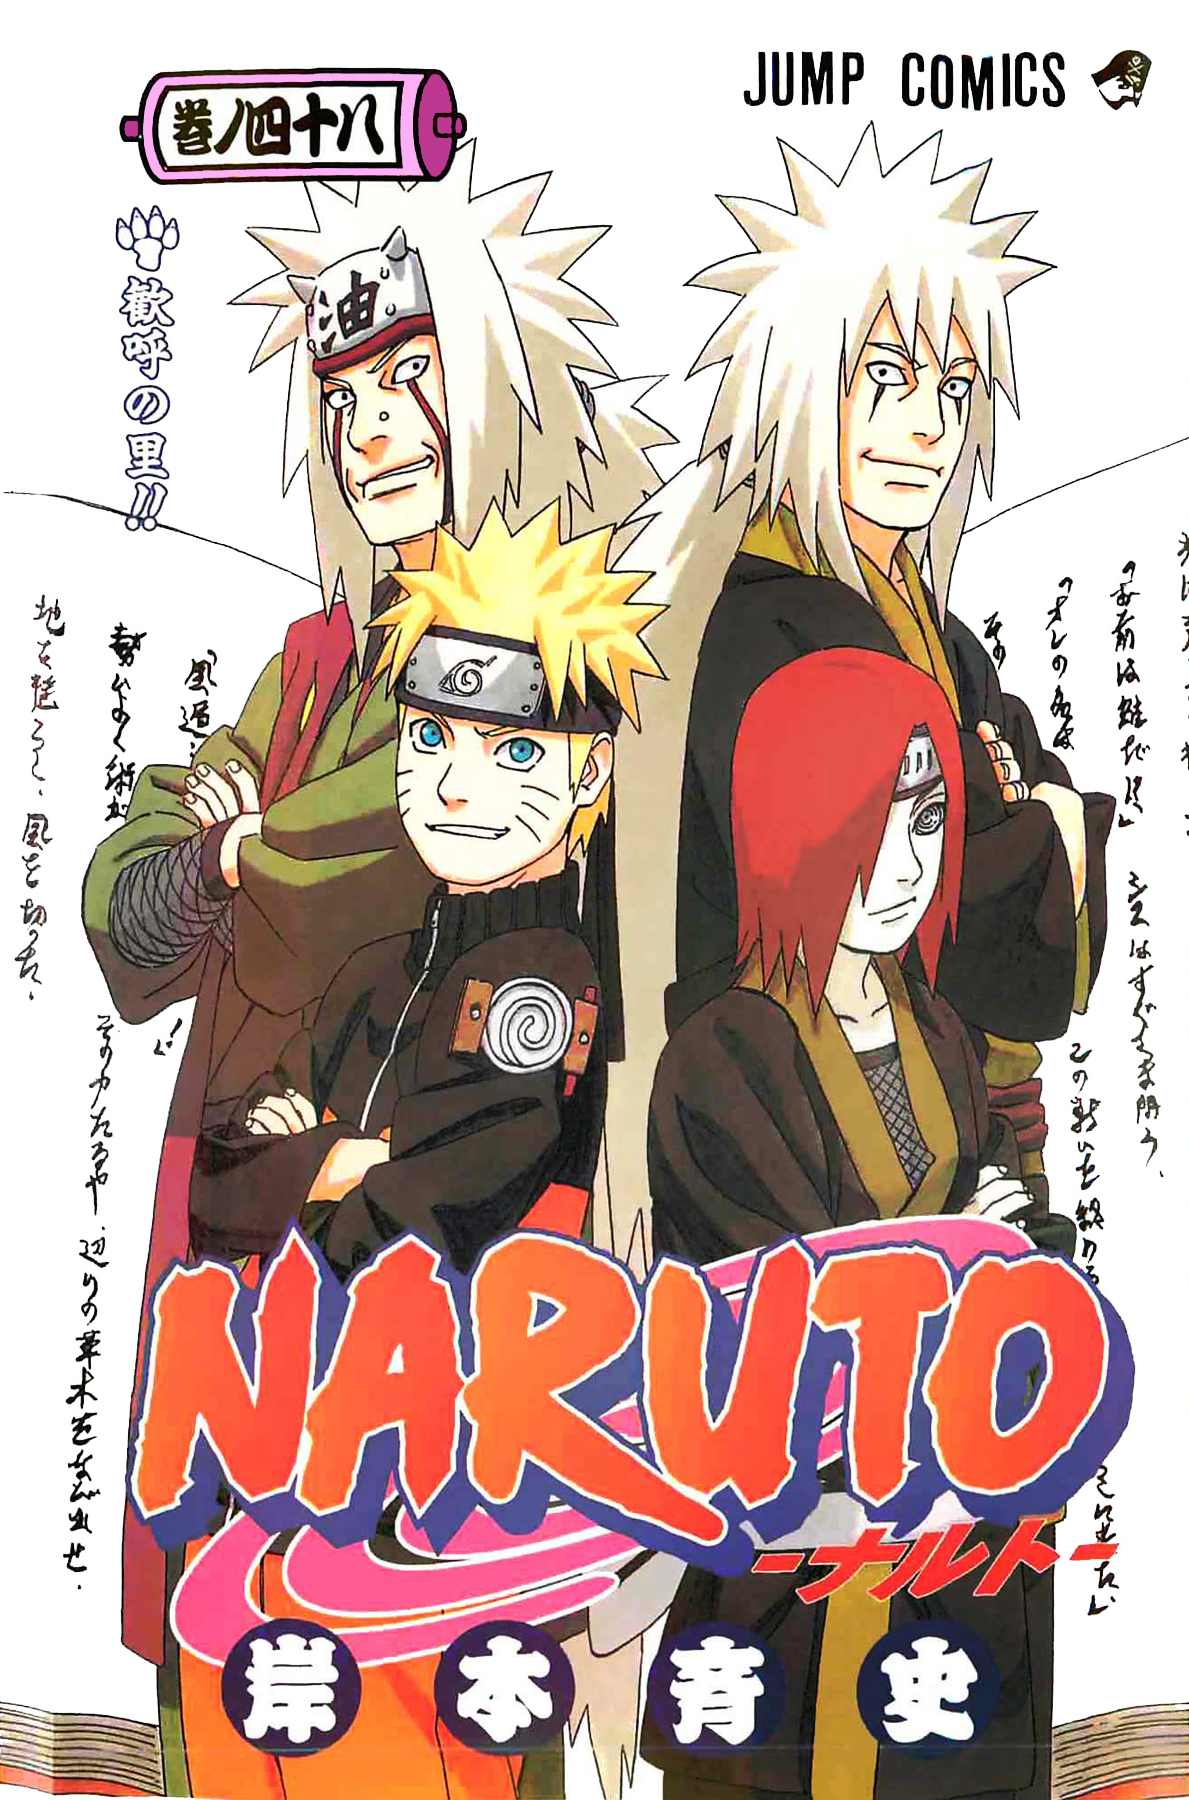 Volume 5: Ao, Wiki Naruto